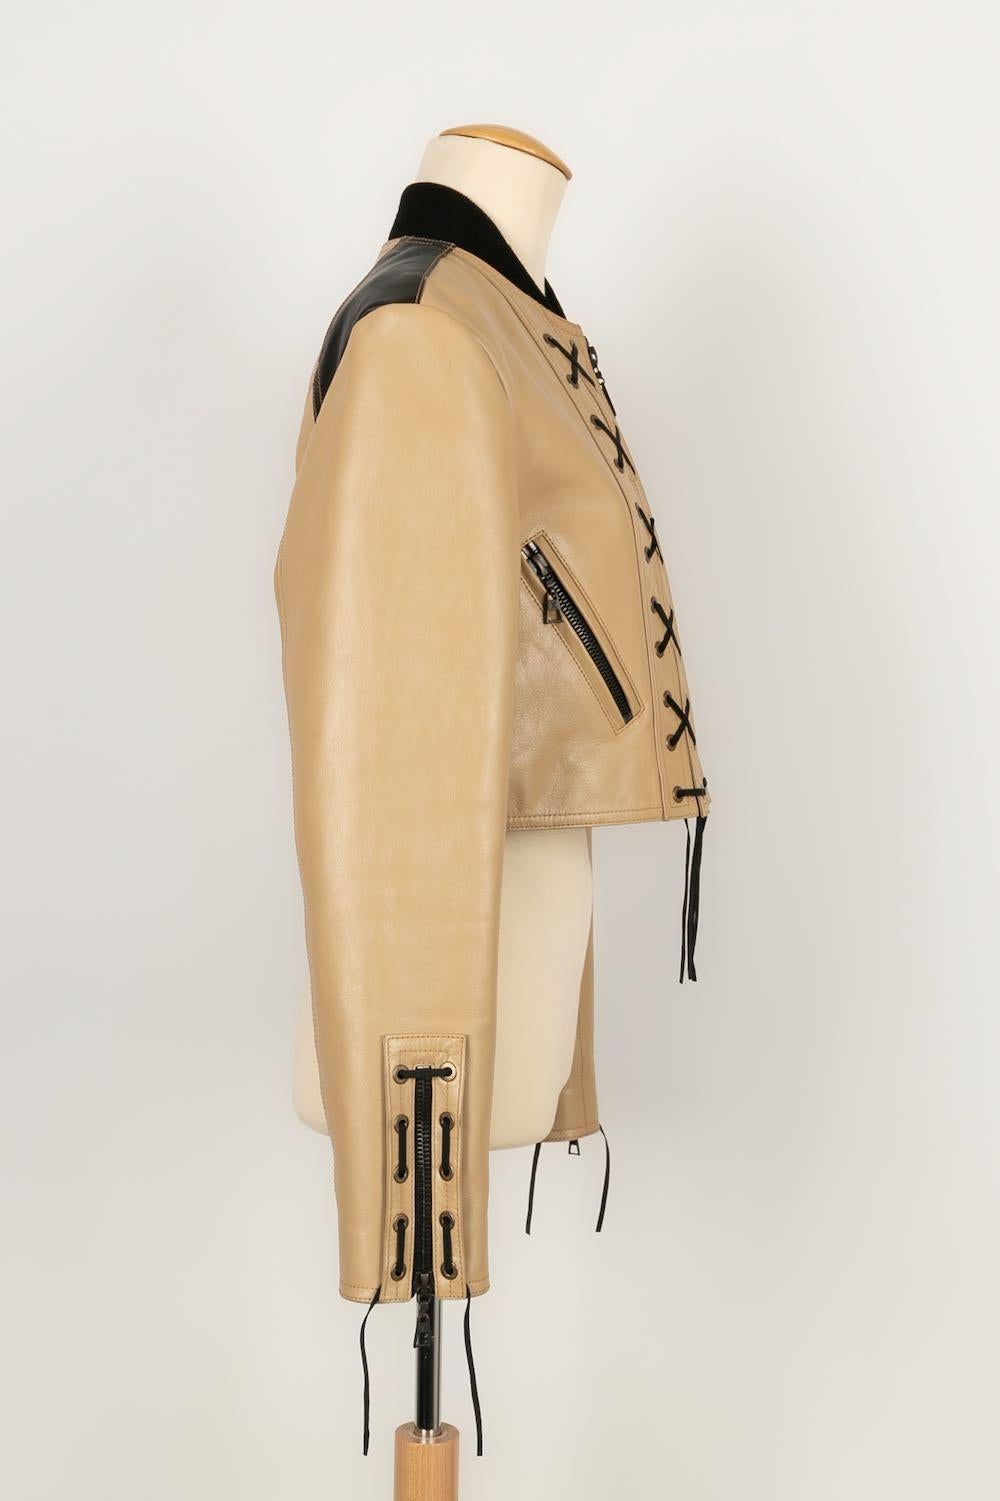 Louis Vuitton - (Fabriqué en Italie) Veste en cuir de veau camel avec lien en daim noir. Taille 40FR. Collectional 2016.

Informations complémentaires : 
Dimensions : Largeur des épaules : 40 cm, Poitrine : 42 cm, Longueur des manches : 61 cm
Condit